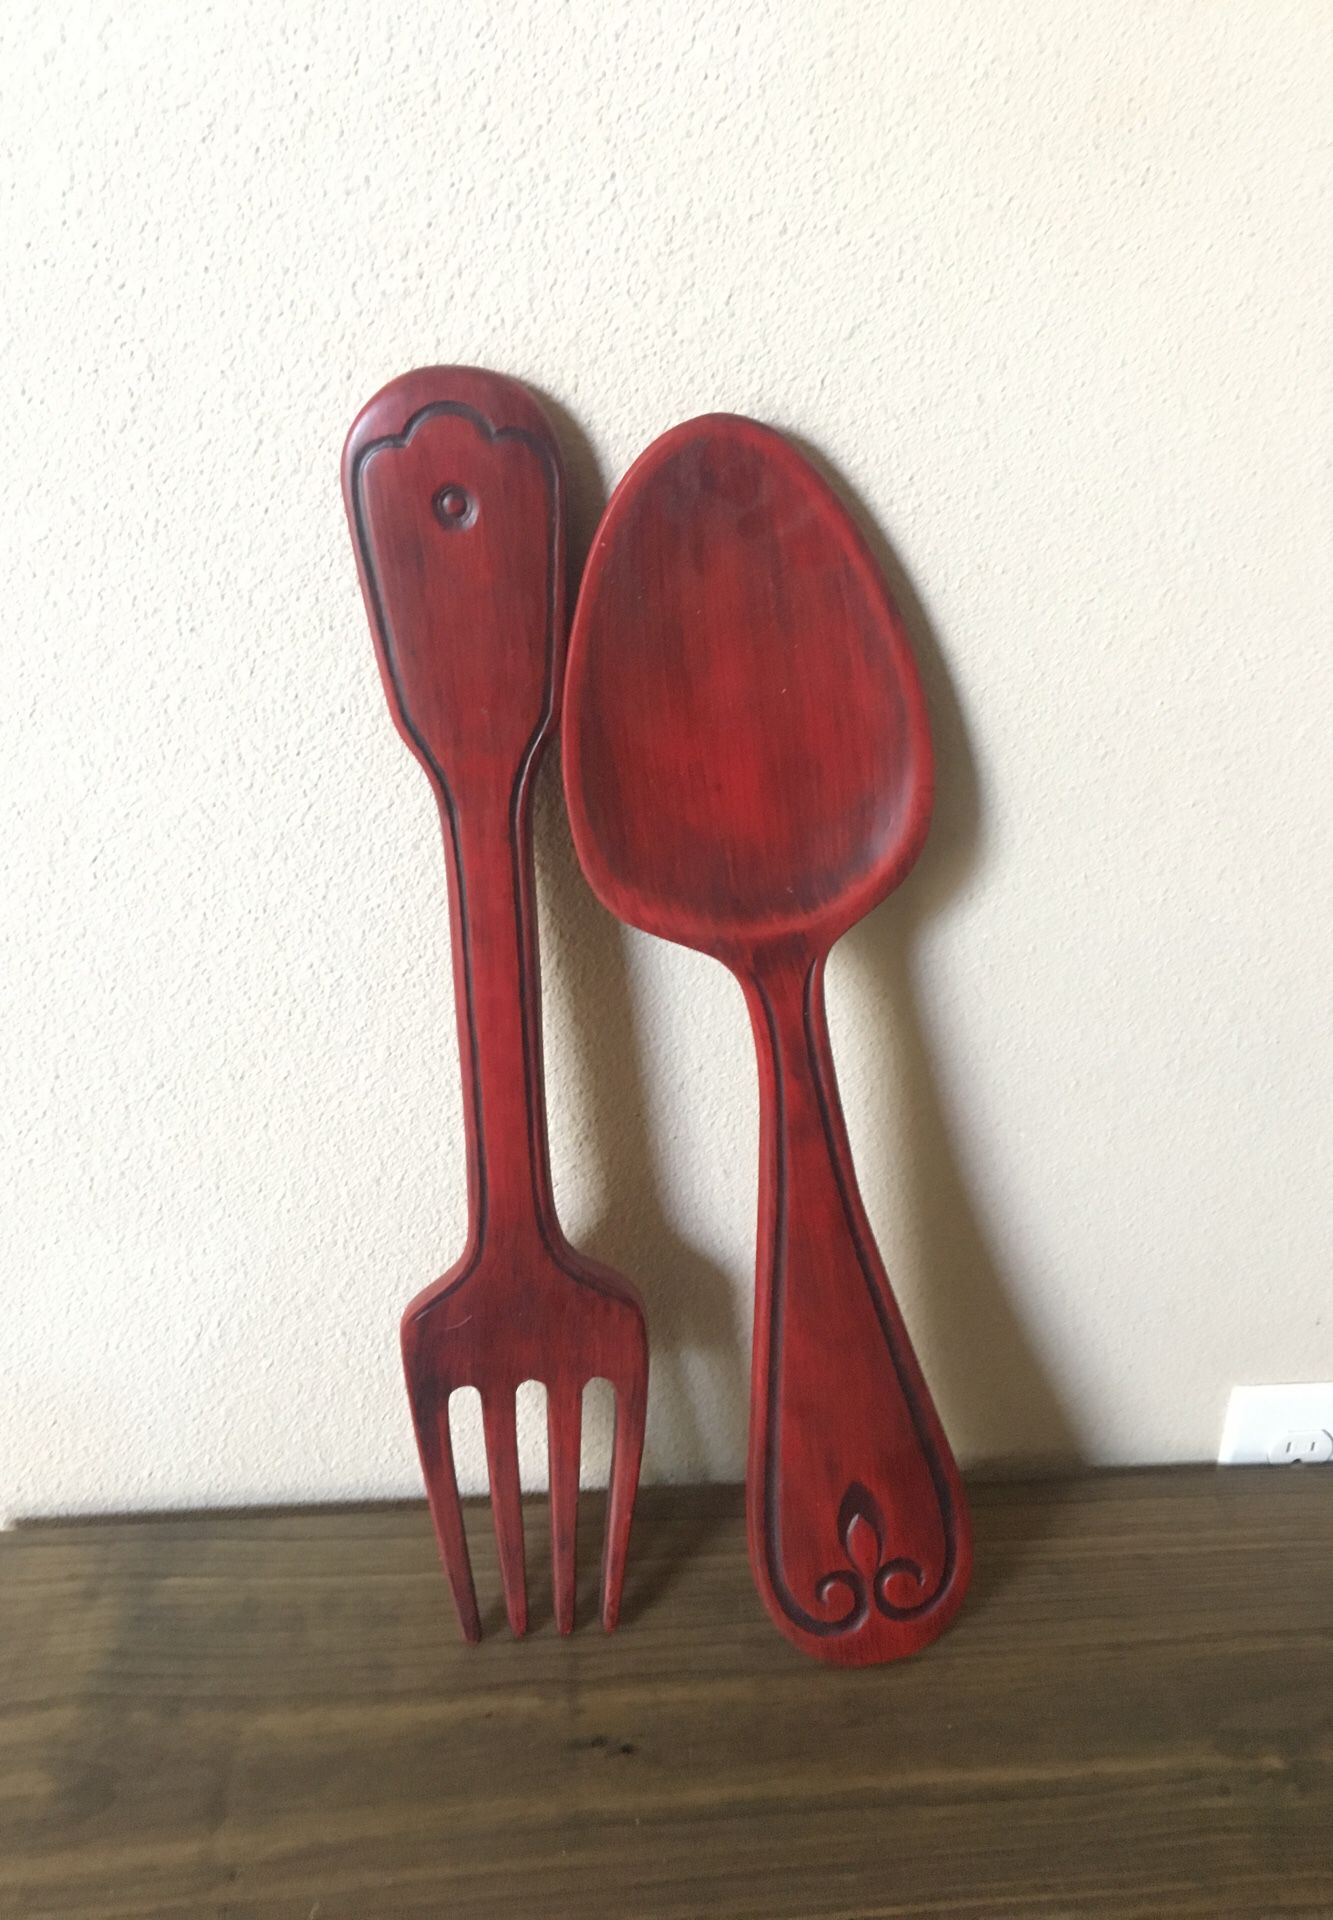 Giant spoon & fork / kitchen decor